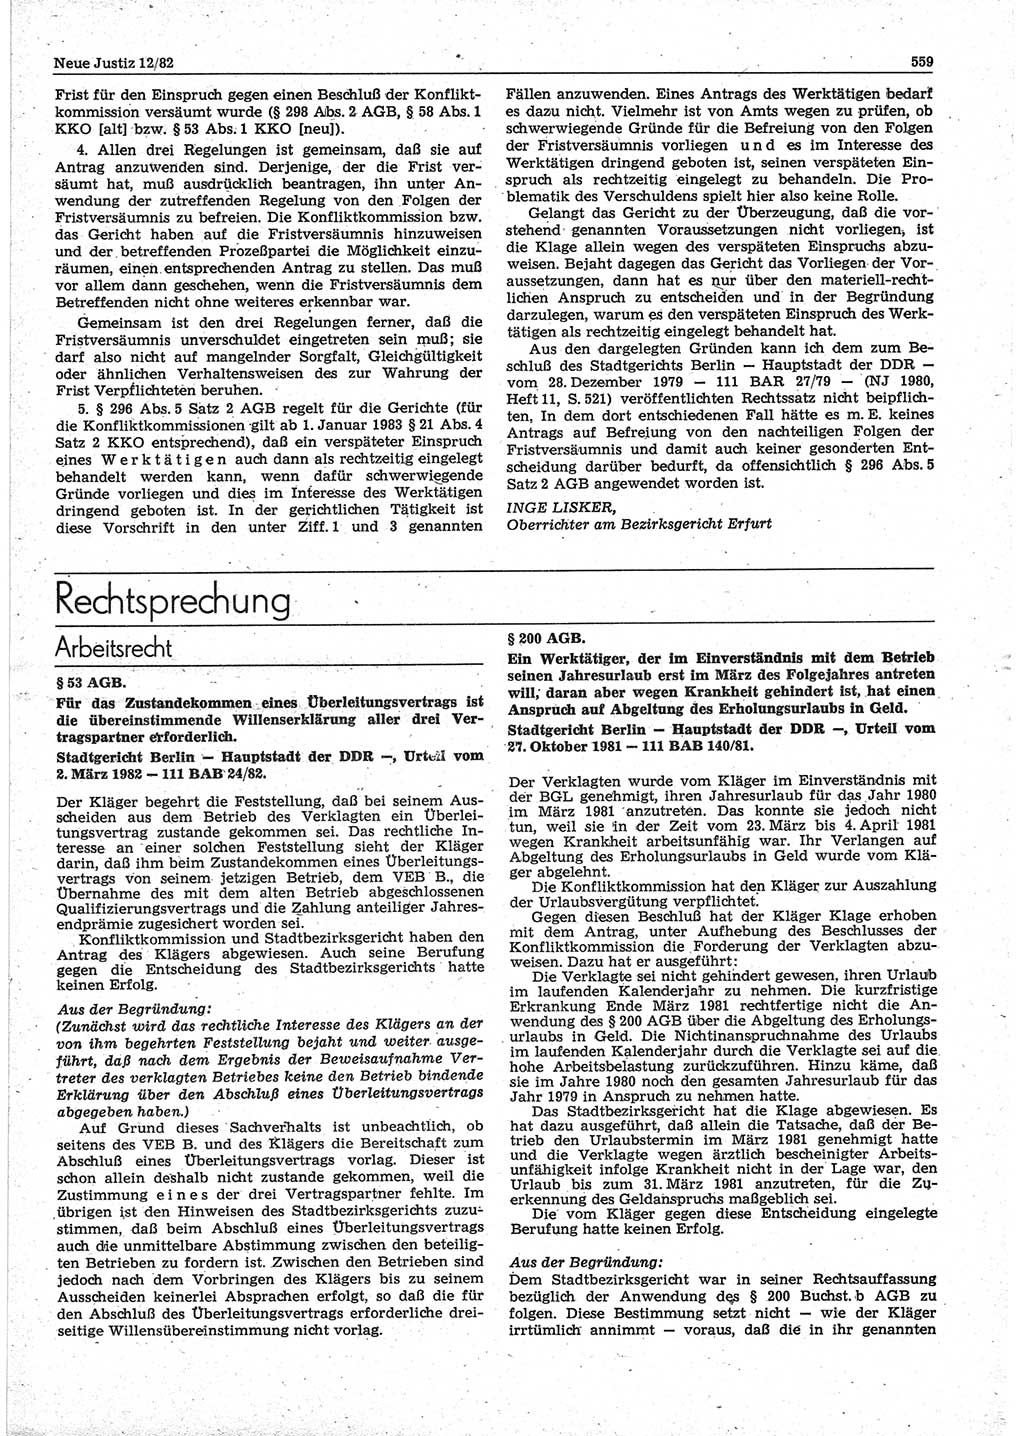 Neue Justiz (NJ), Zeitschrift für sozialistisches Recht und Gesetzlichkeit [Deutsche Demokratische Republik (DDR)], 36. Jahrgang 1982, Seite 559 (NJ DDR 1982, S. 559)